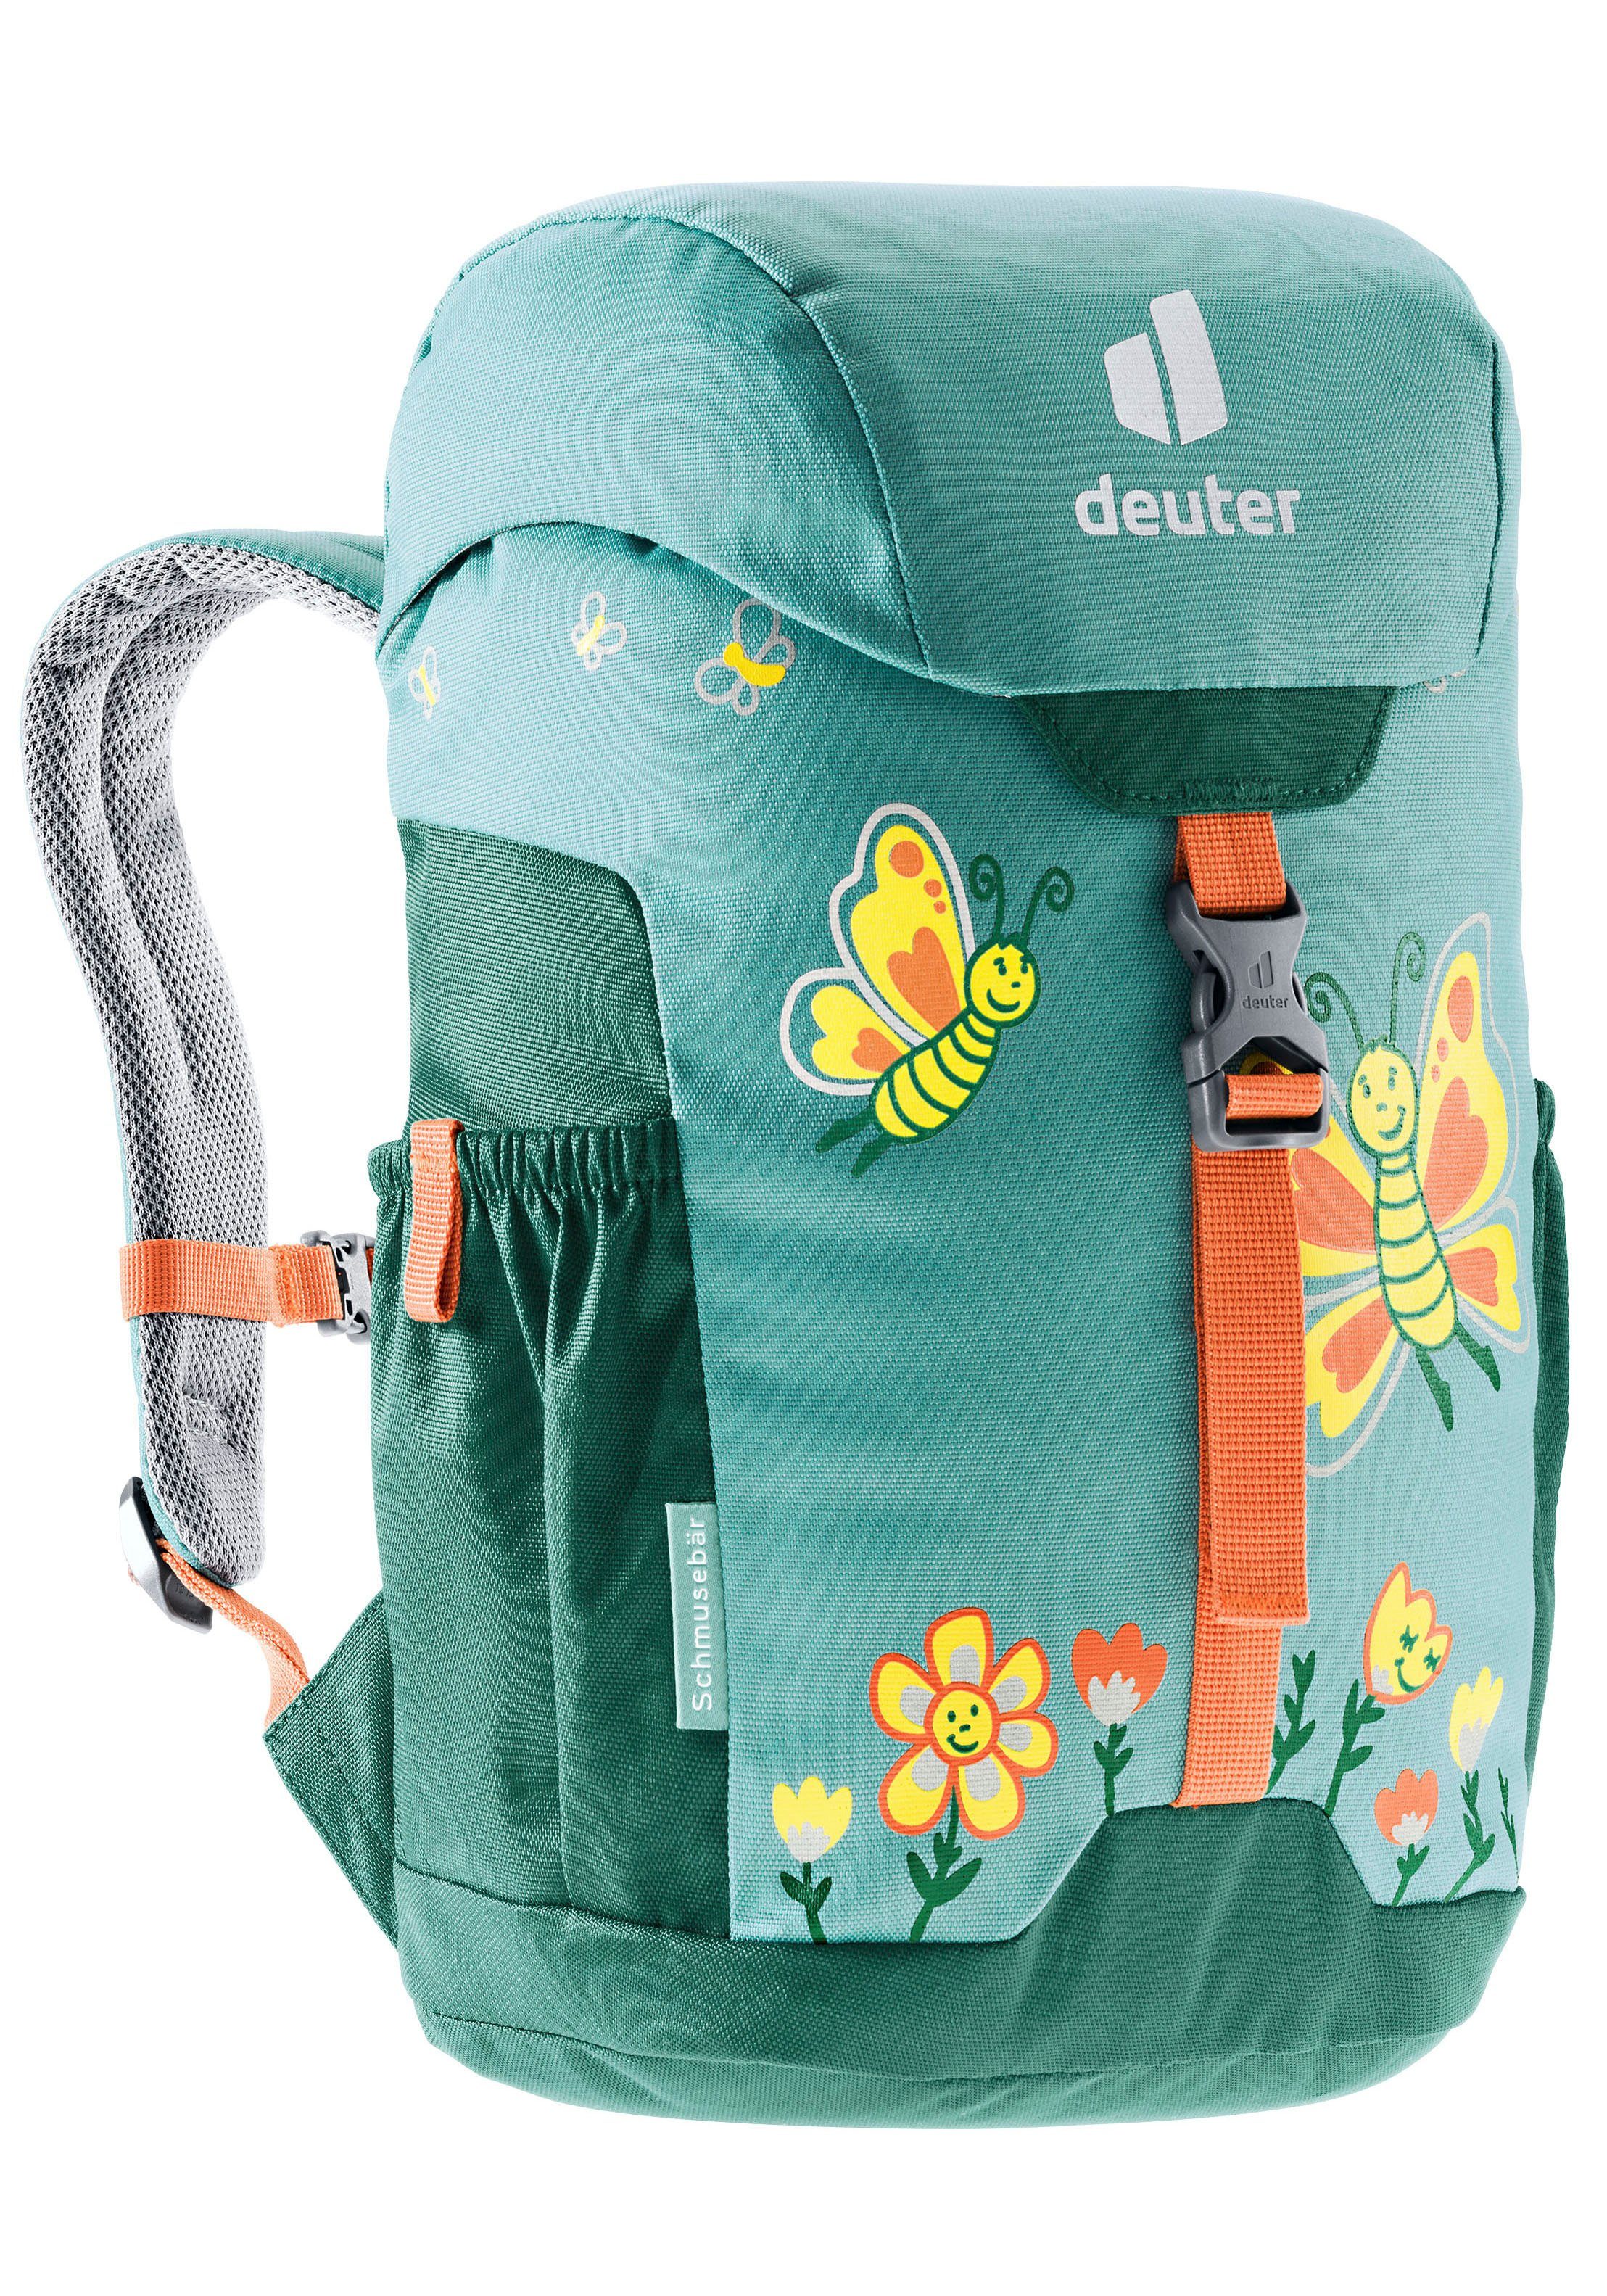 deuter Schmusebär Kinderrucksack dustblue-alpinegreen